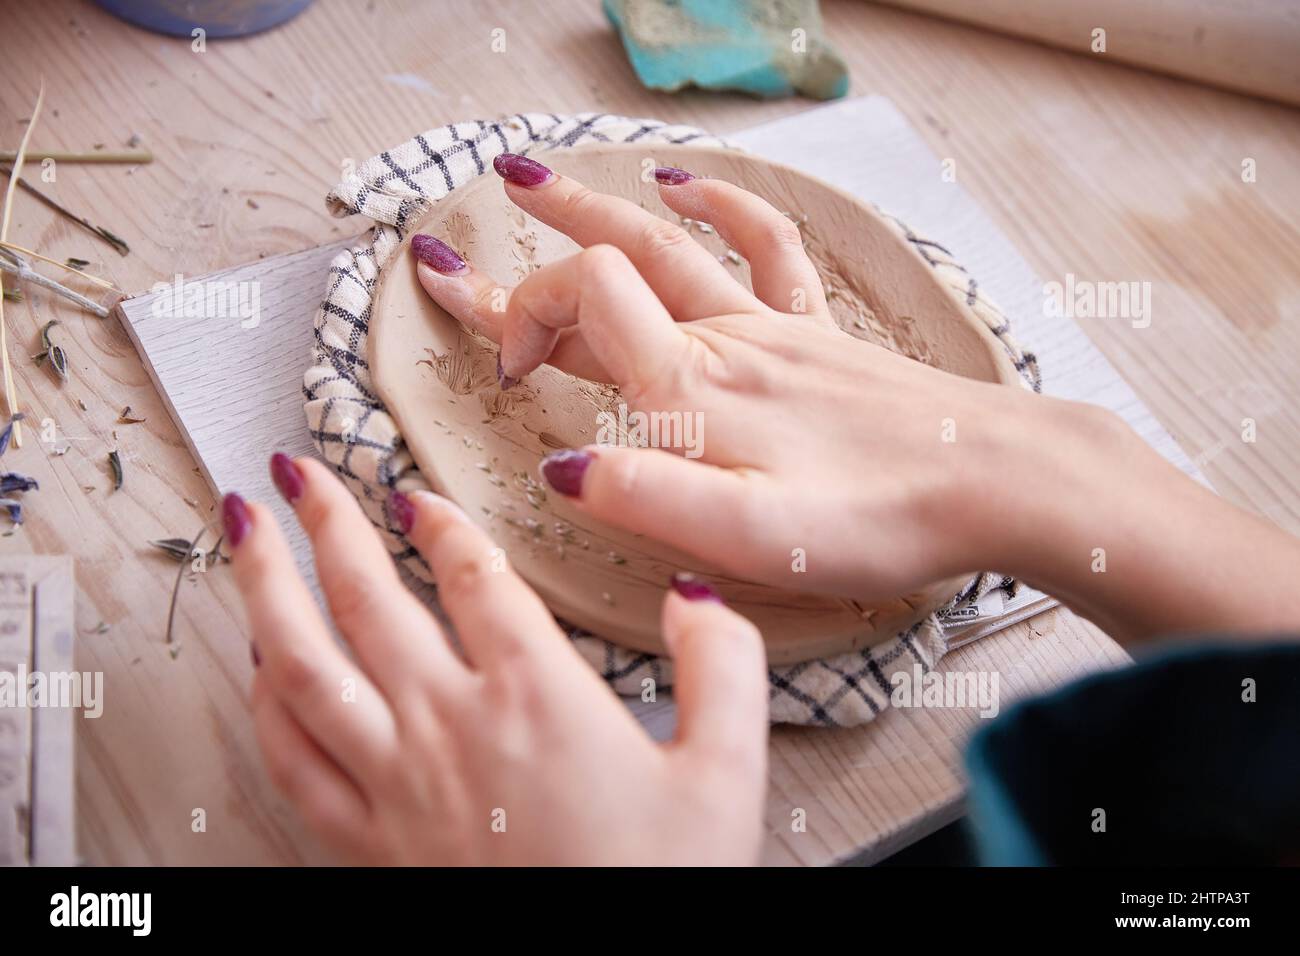 les mains des femmes d'un céramiste lissent une plaque ou un panneau figuré Banque D'Images